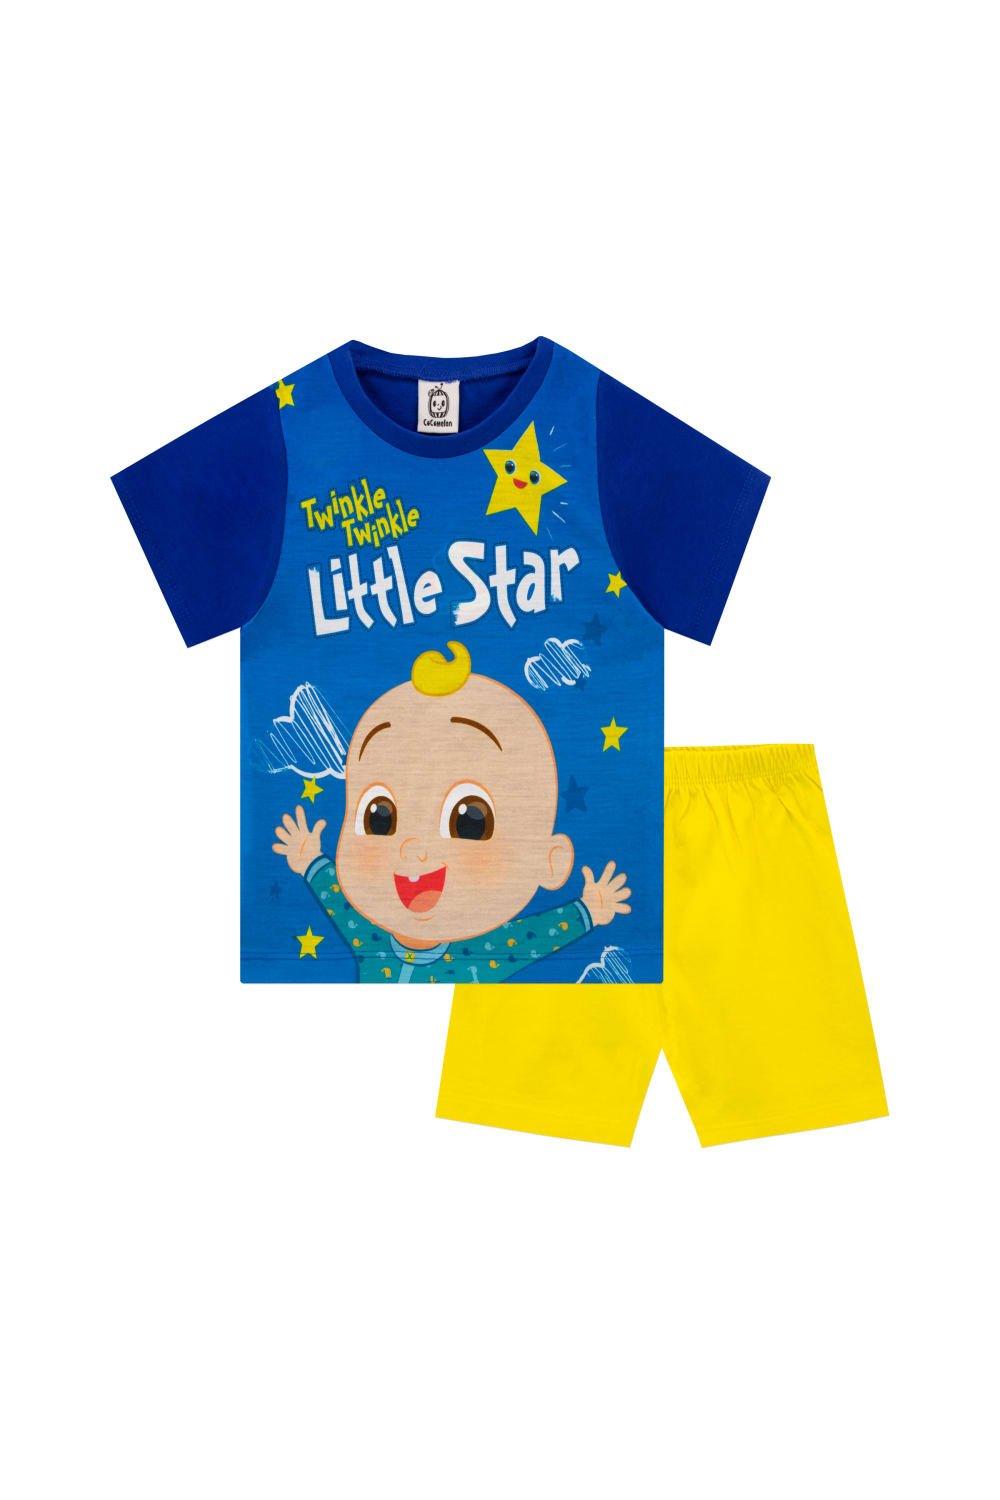 Twinkle Twinkle Little Star Short Pyjamas